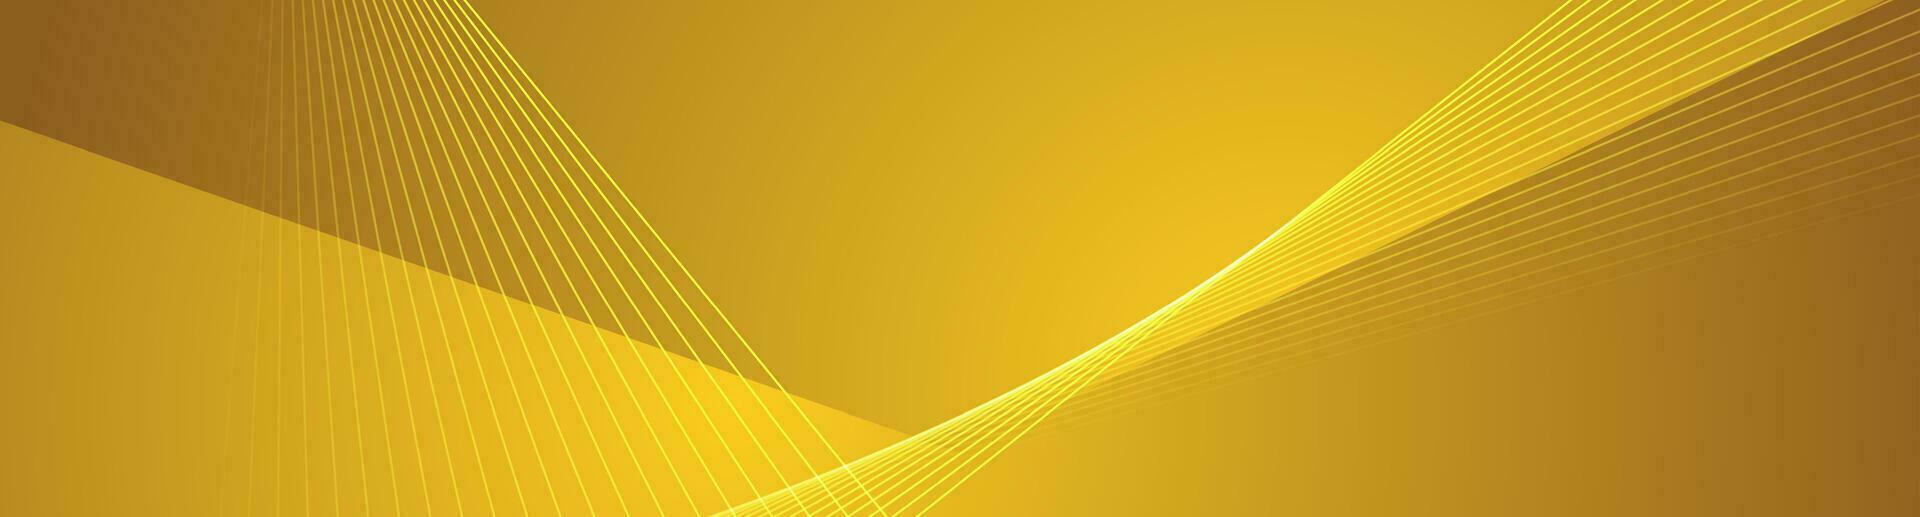 mínimo dorado amarillo geometría bandera con rayas y líneas vector